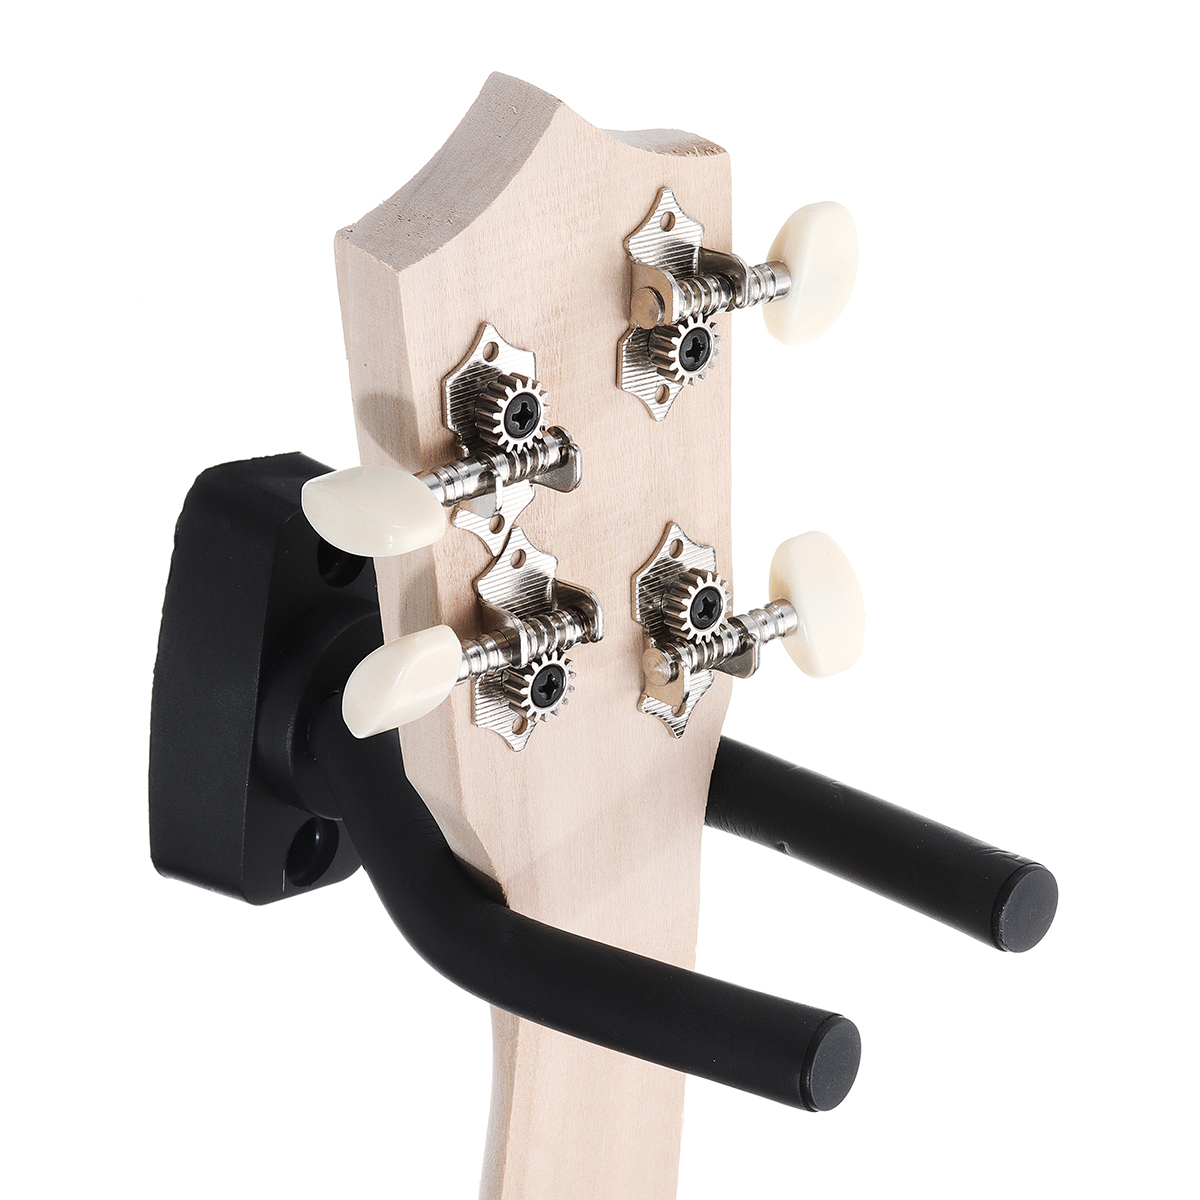 

Гитара настенное крепление Вешалка Крючки Stand Holder для гитары бас-скрипка с винтами